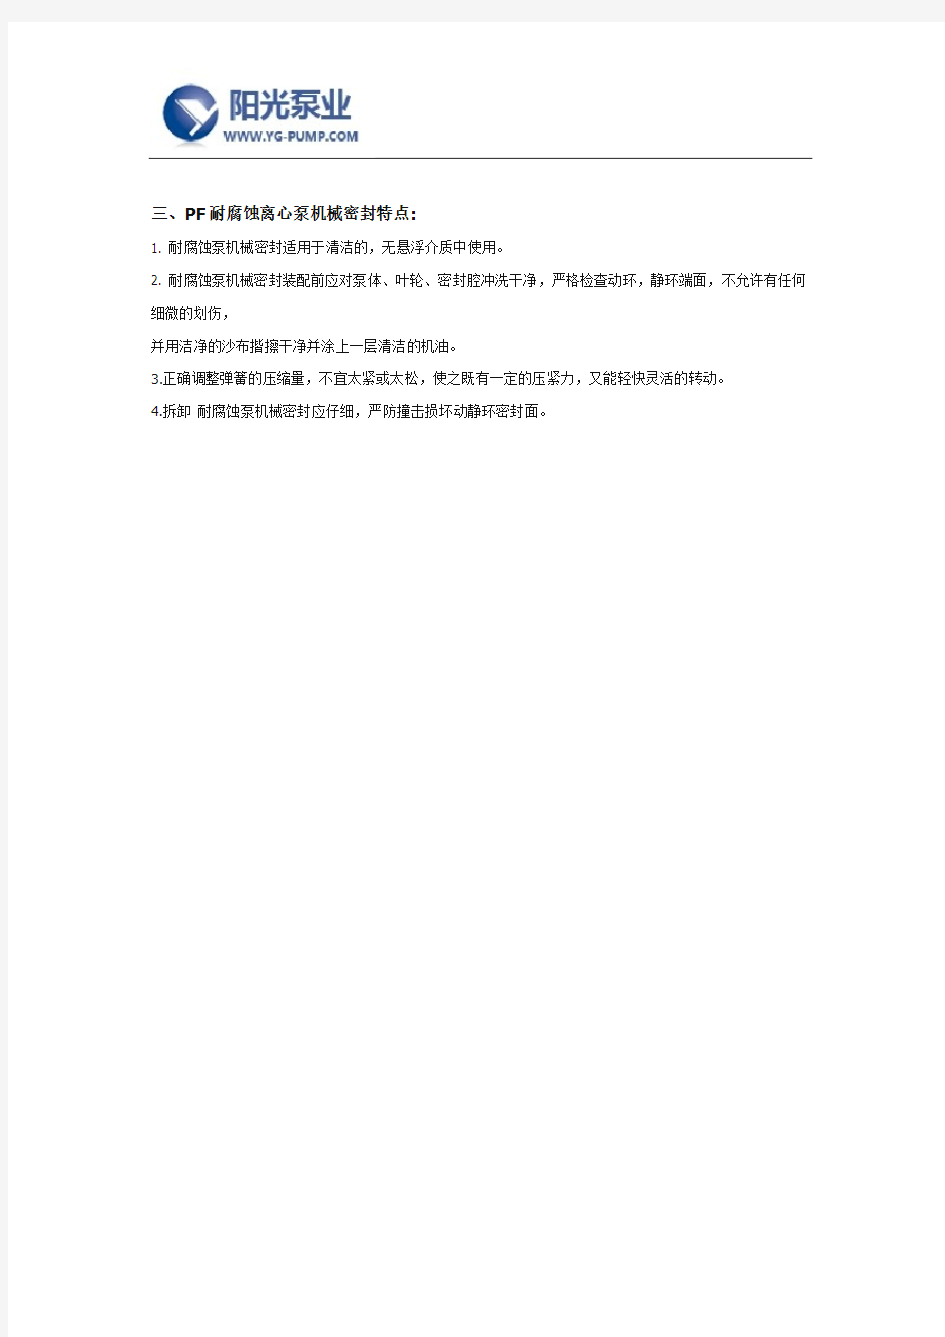 PF强耐腐蚀化工离心泵价格-上海阳光泵业